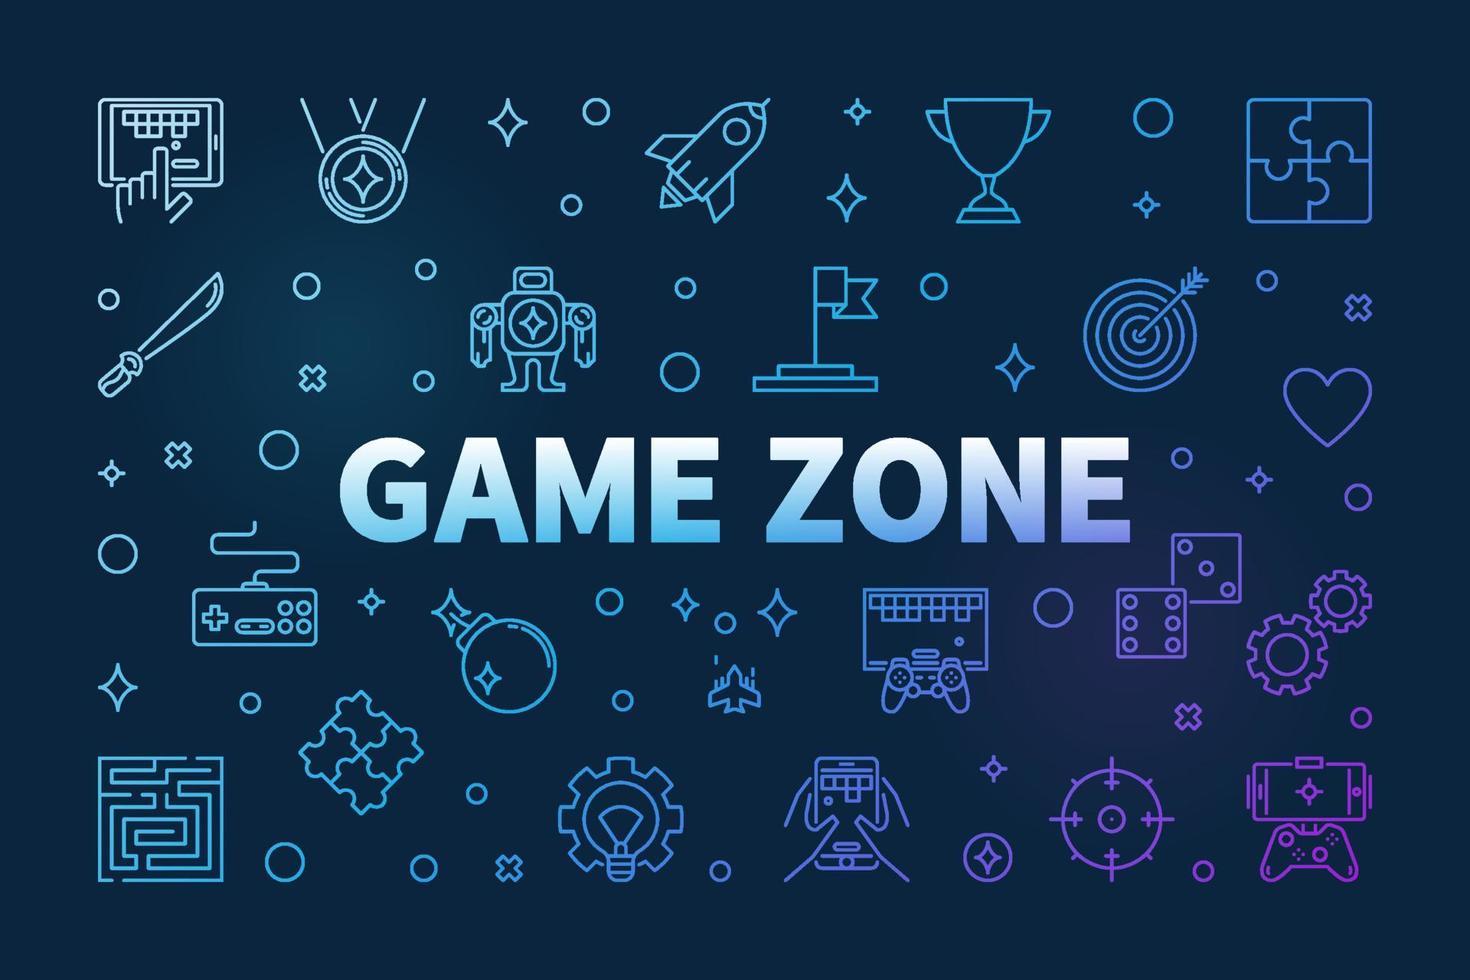 spel zone vector gekleurde schets horizontaal illustratie